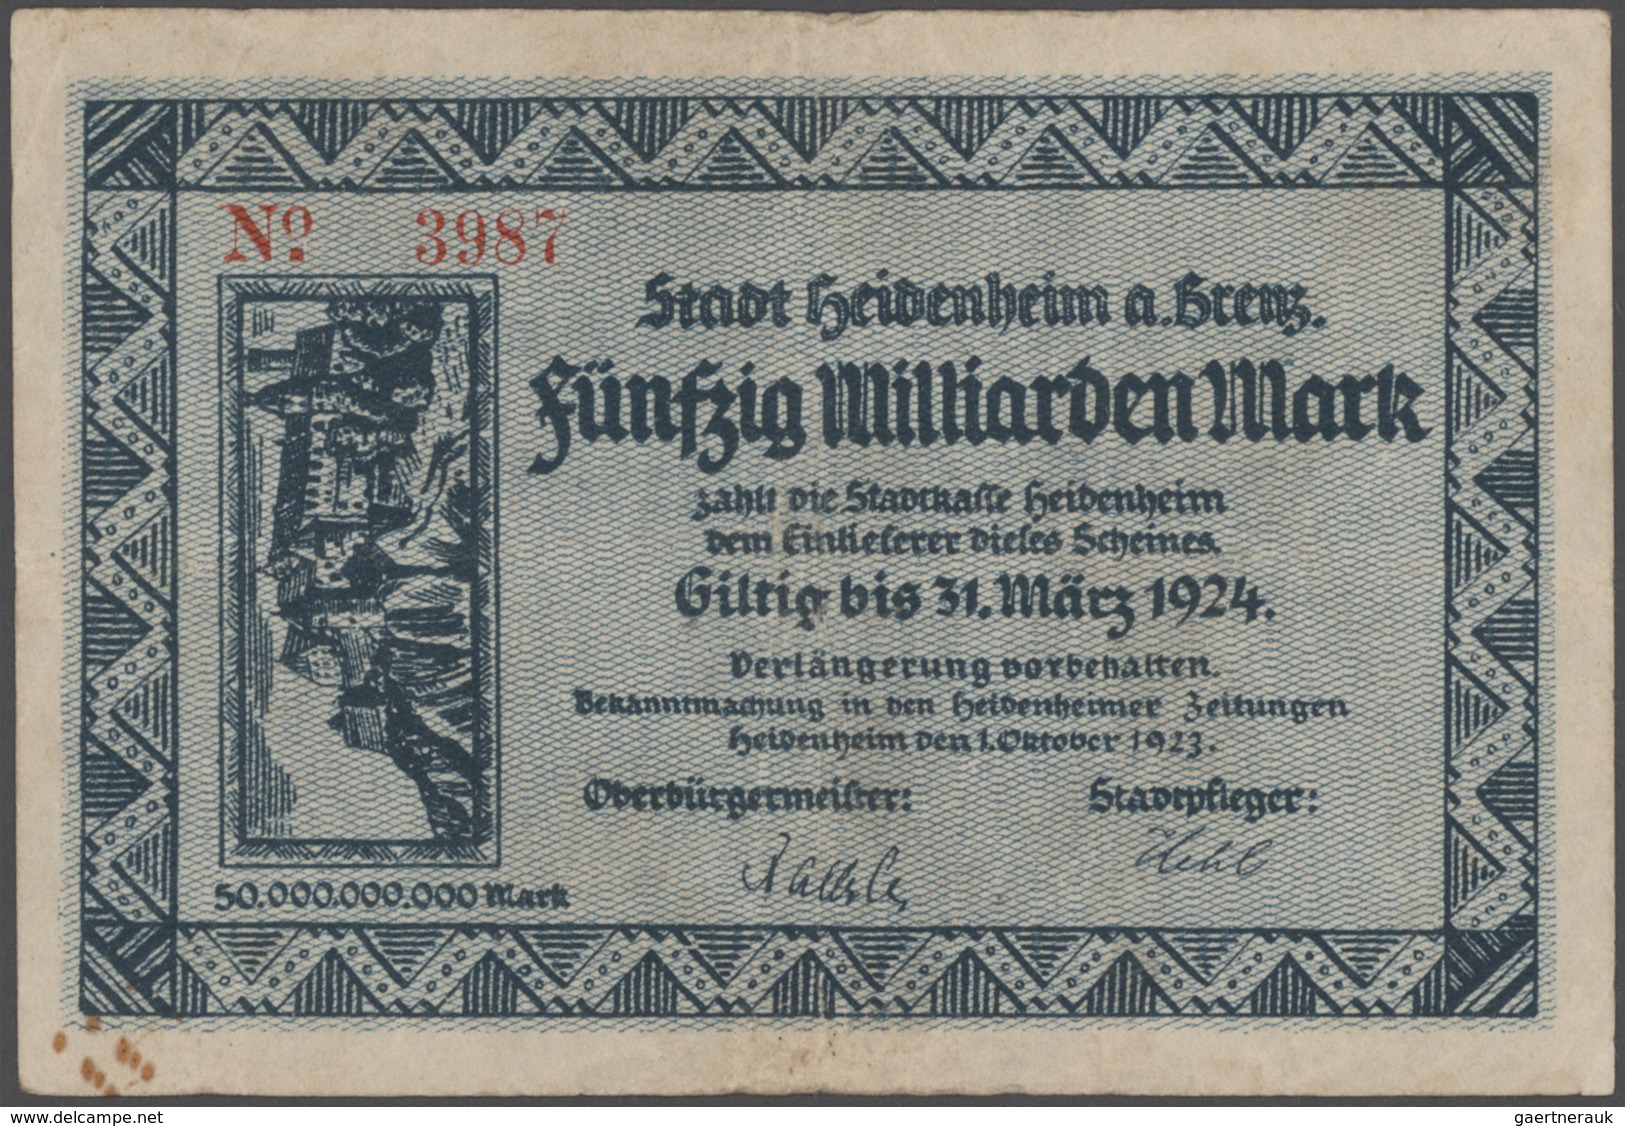 Deutschland - Notgeld - Württemberg: Sammlung mit über 700 verschiedenen Scheinen von Aalen bis Zuff